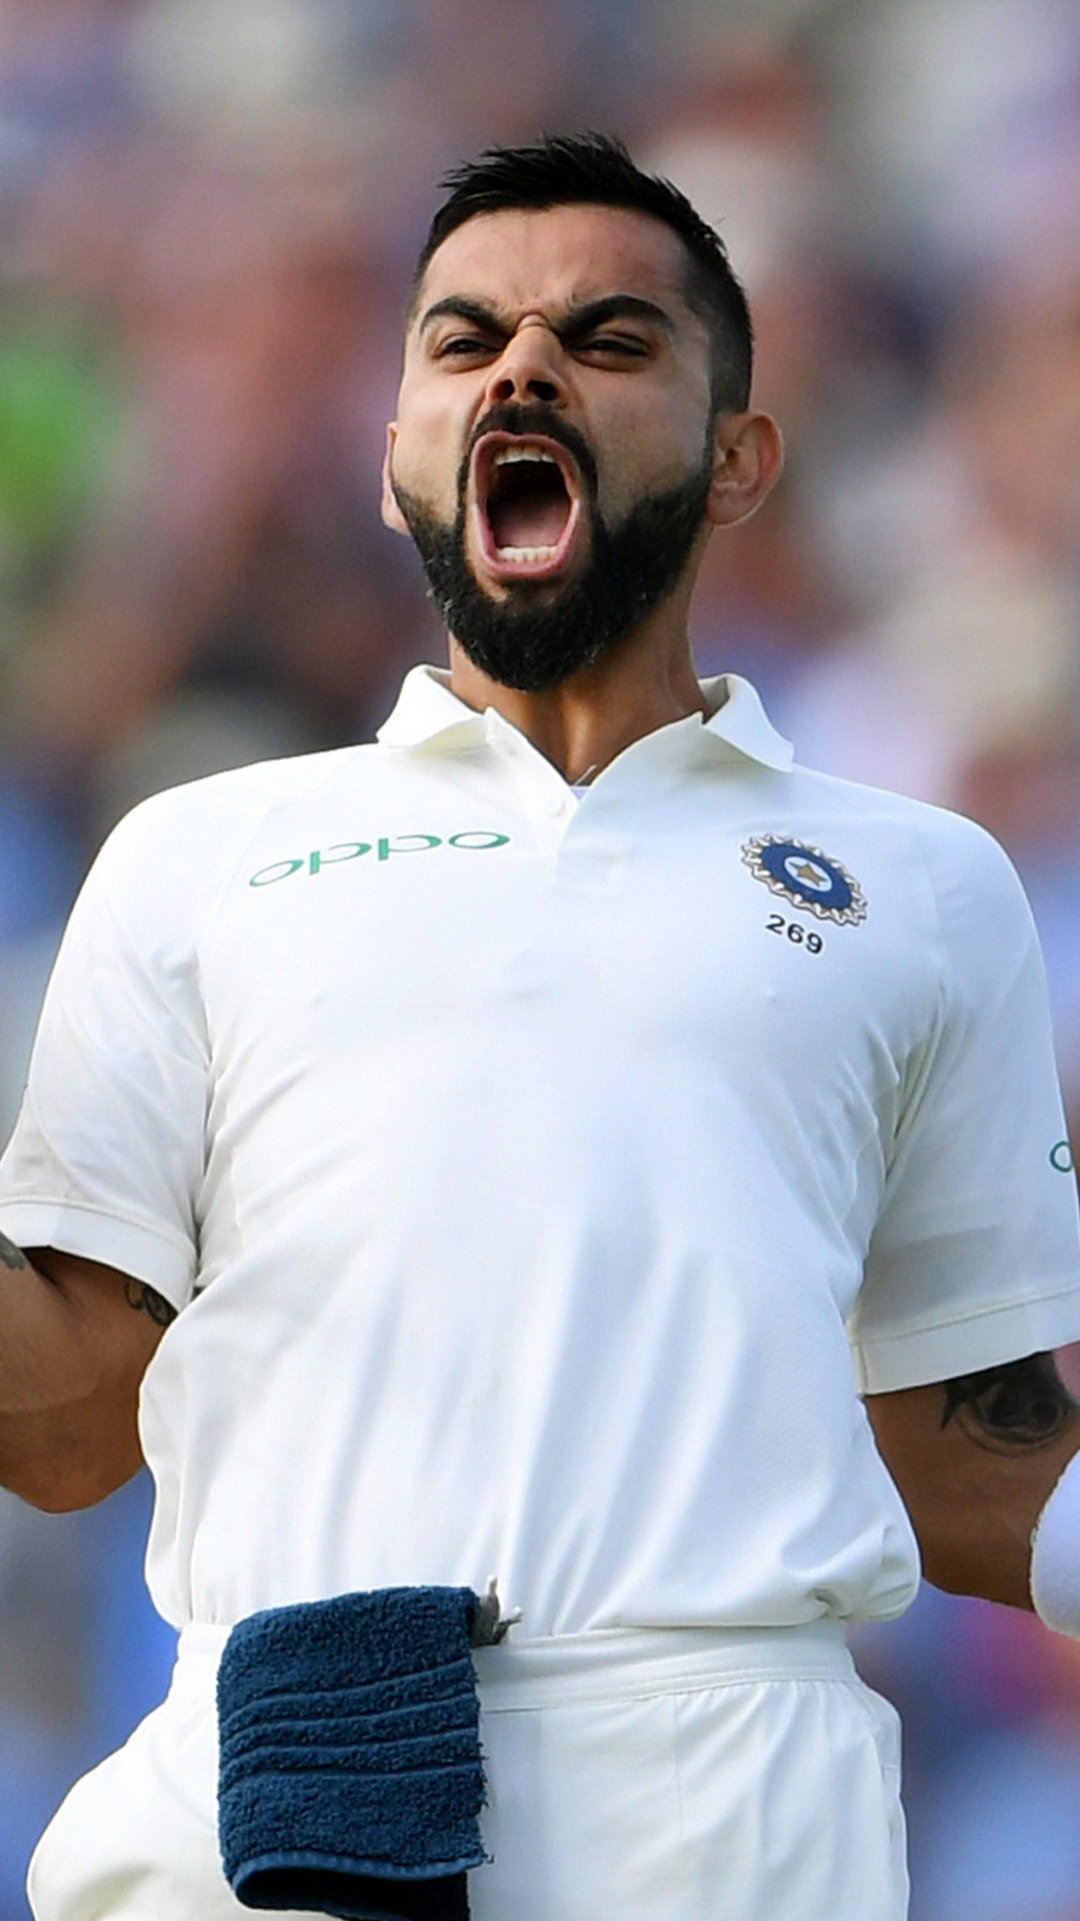 ICC ने जारी की नई टेस्ट रैकिंग, टॉप 5 में एक भारतीय शामिल; जाने विराट कोहली का नंबर